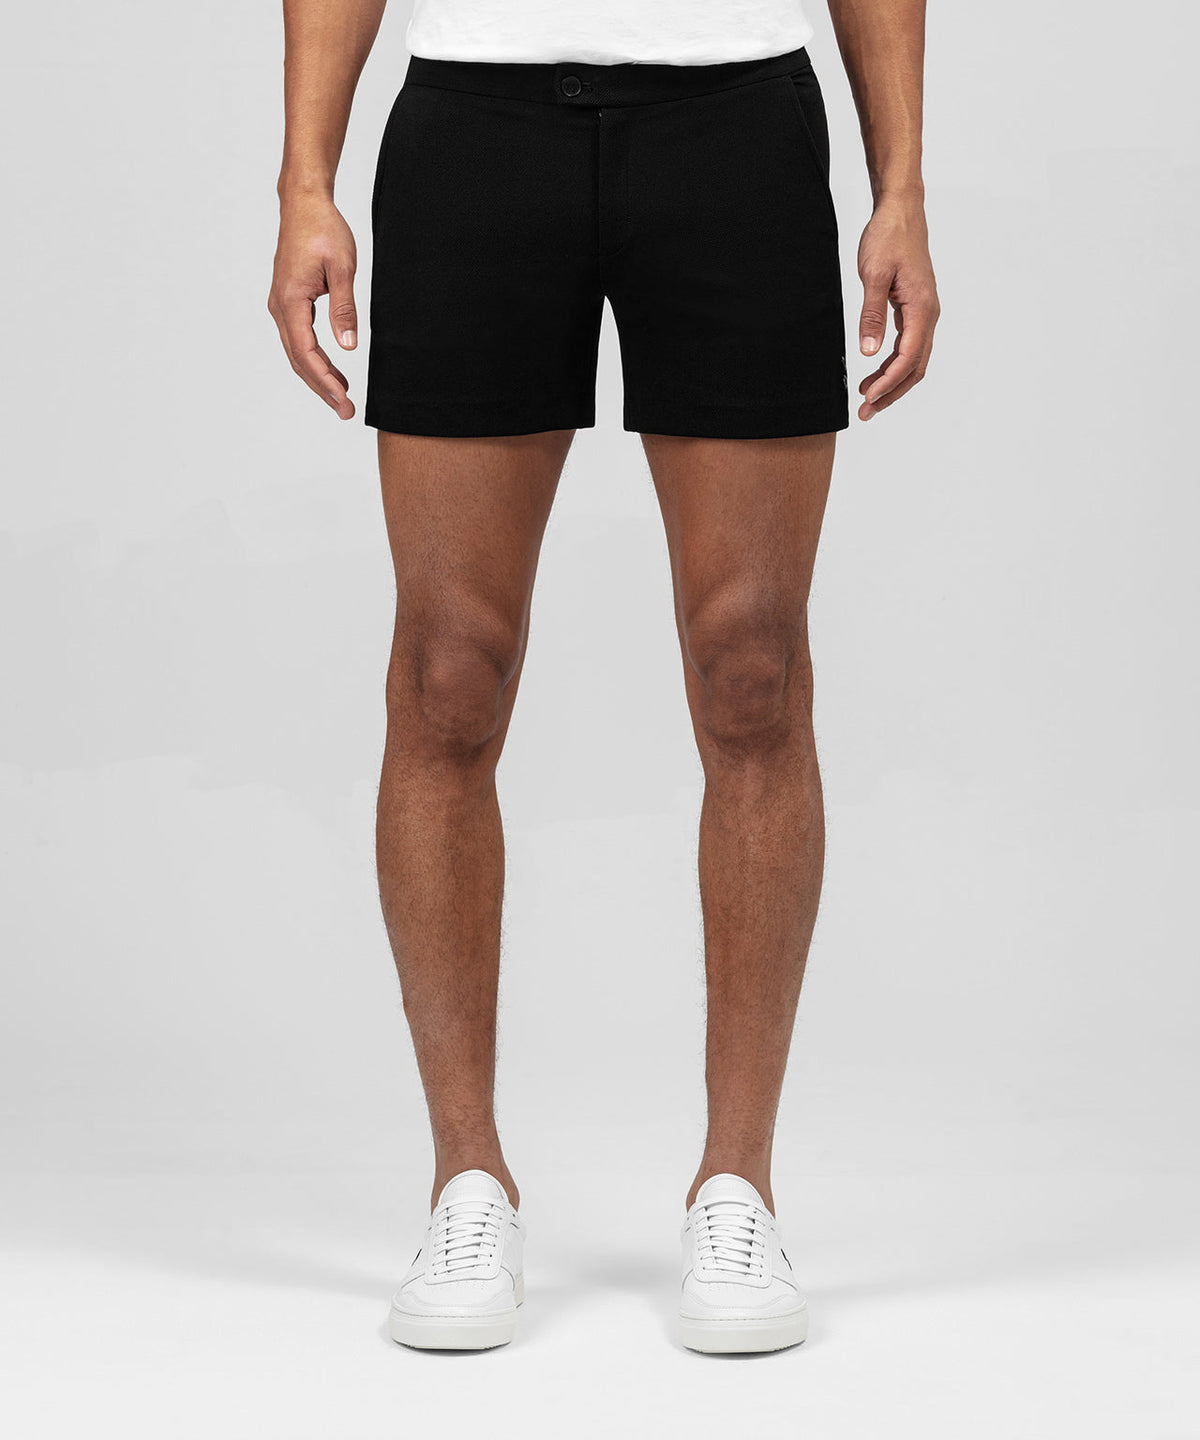 RD Tennis Shorts: Black